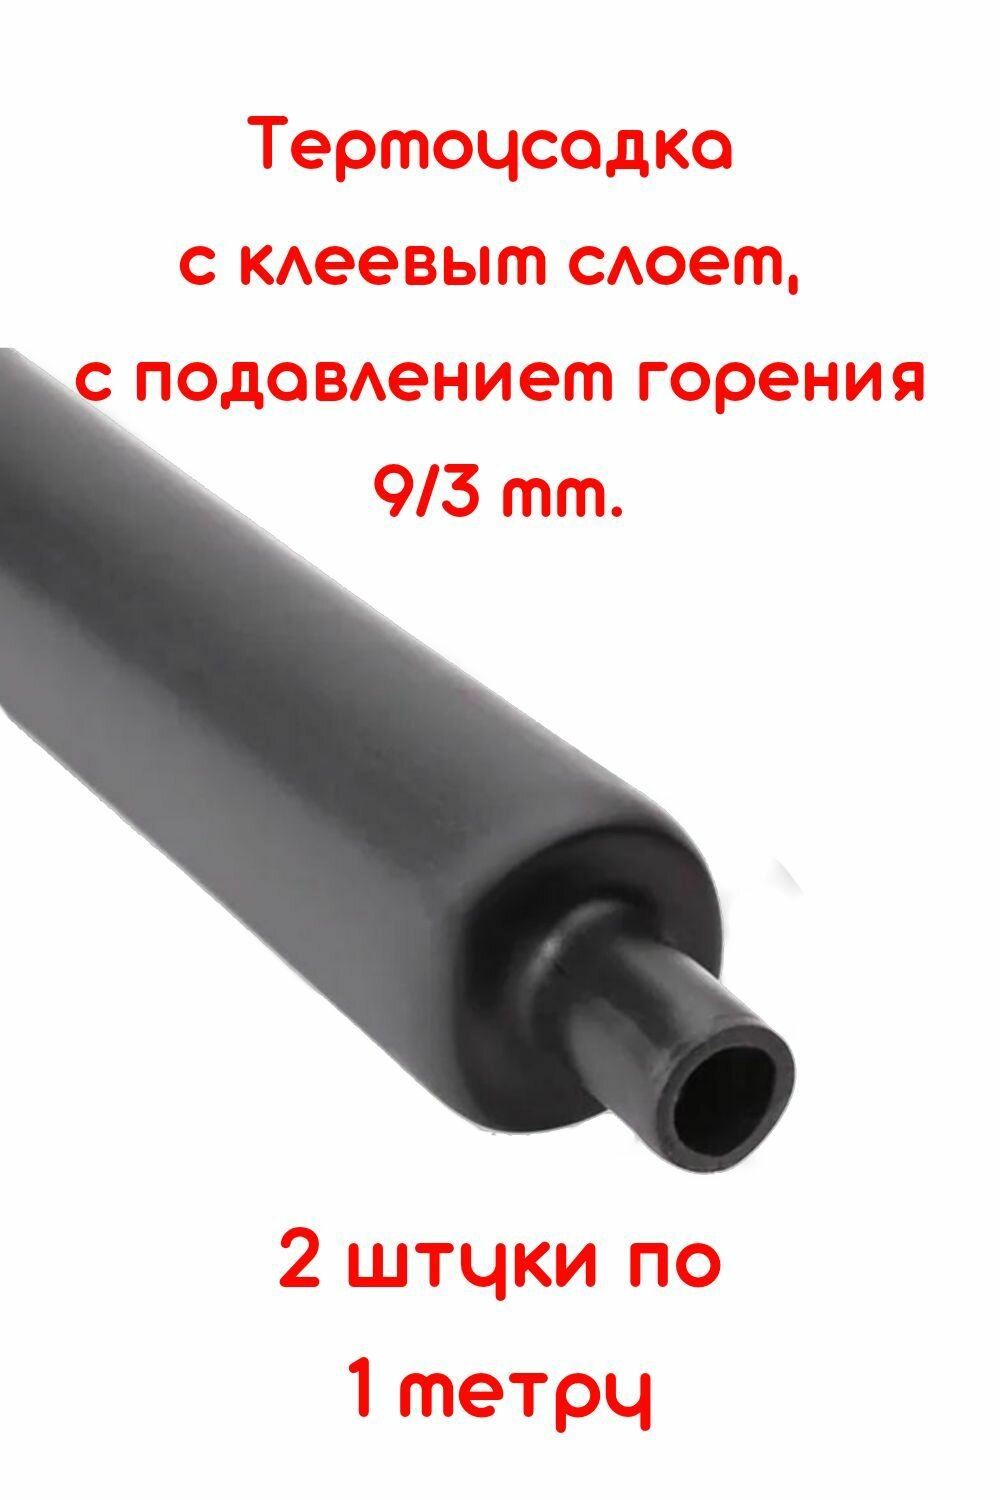 Термоусадочная трубка с клеевым слоем 2 штуки черная 9/3 мм длина 1м. ТТК(3:1) с подавлением горения